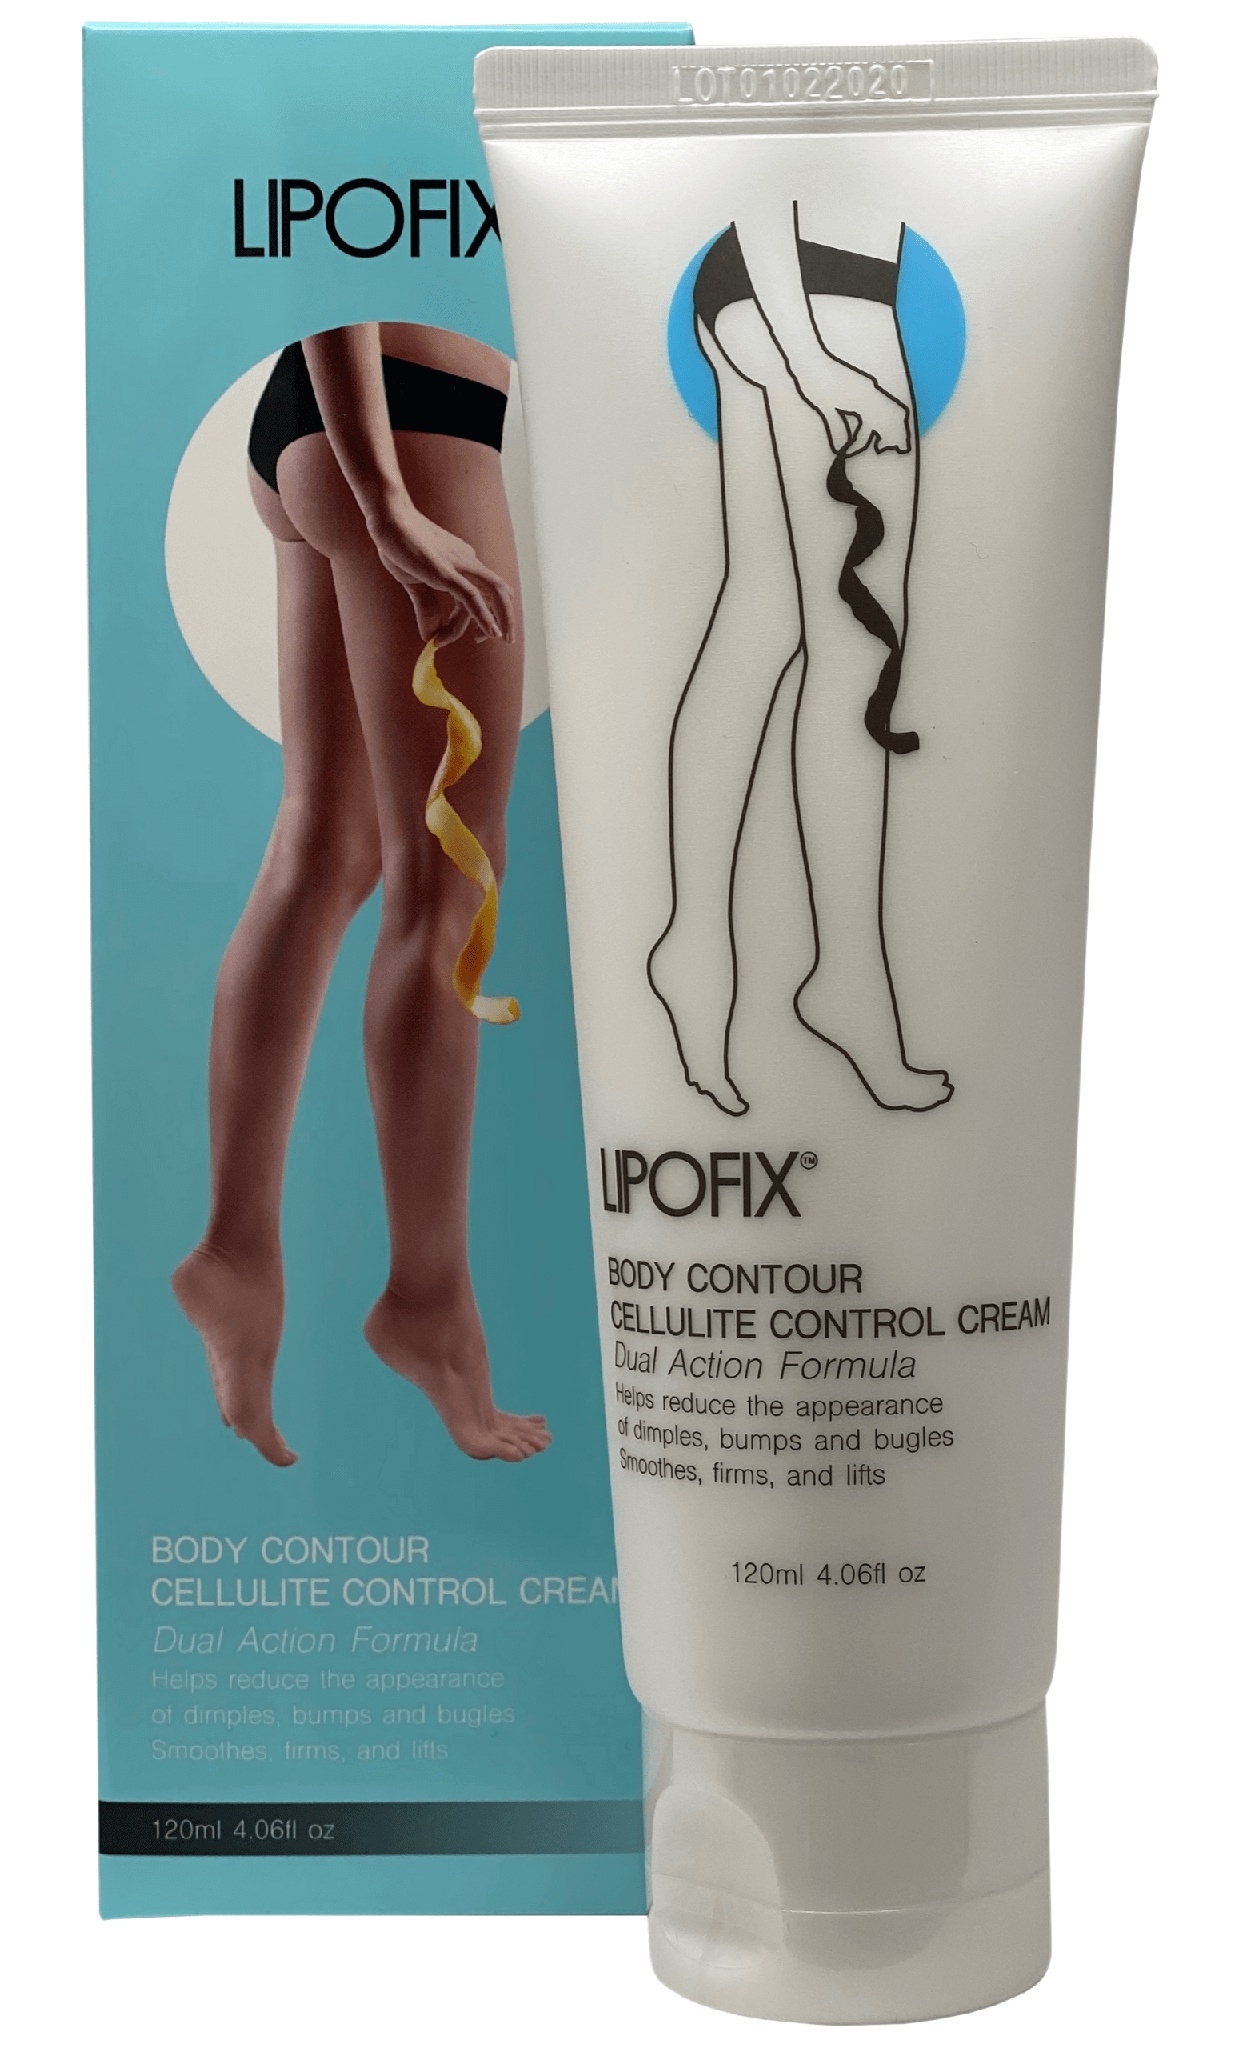 Lipofix Body Contour Cellulite Control Cream